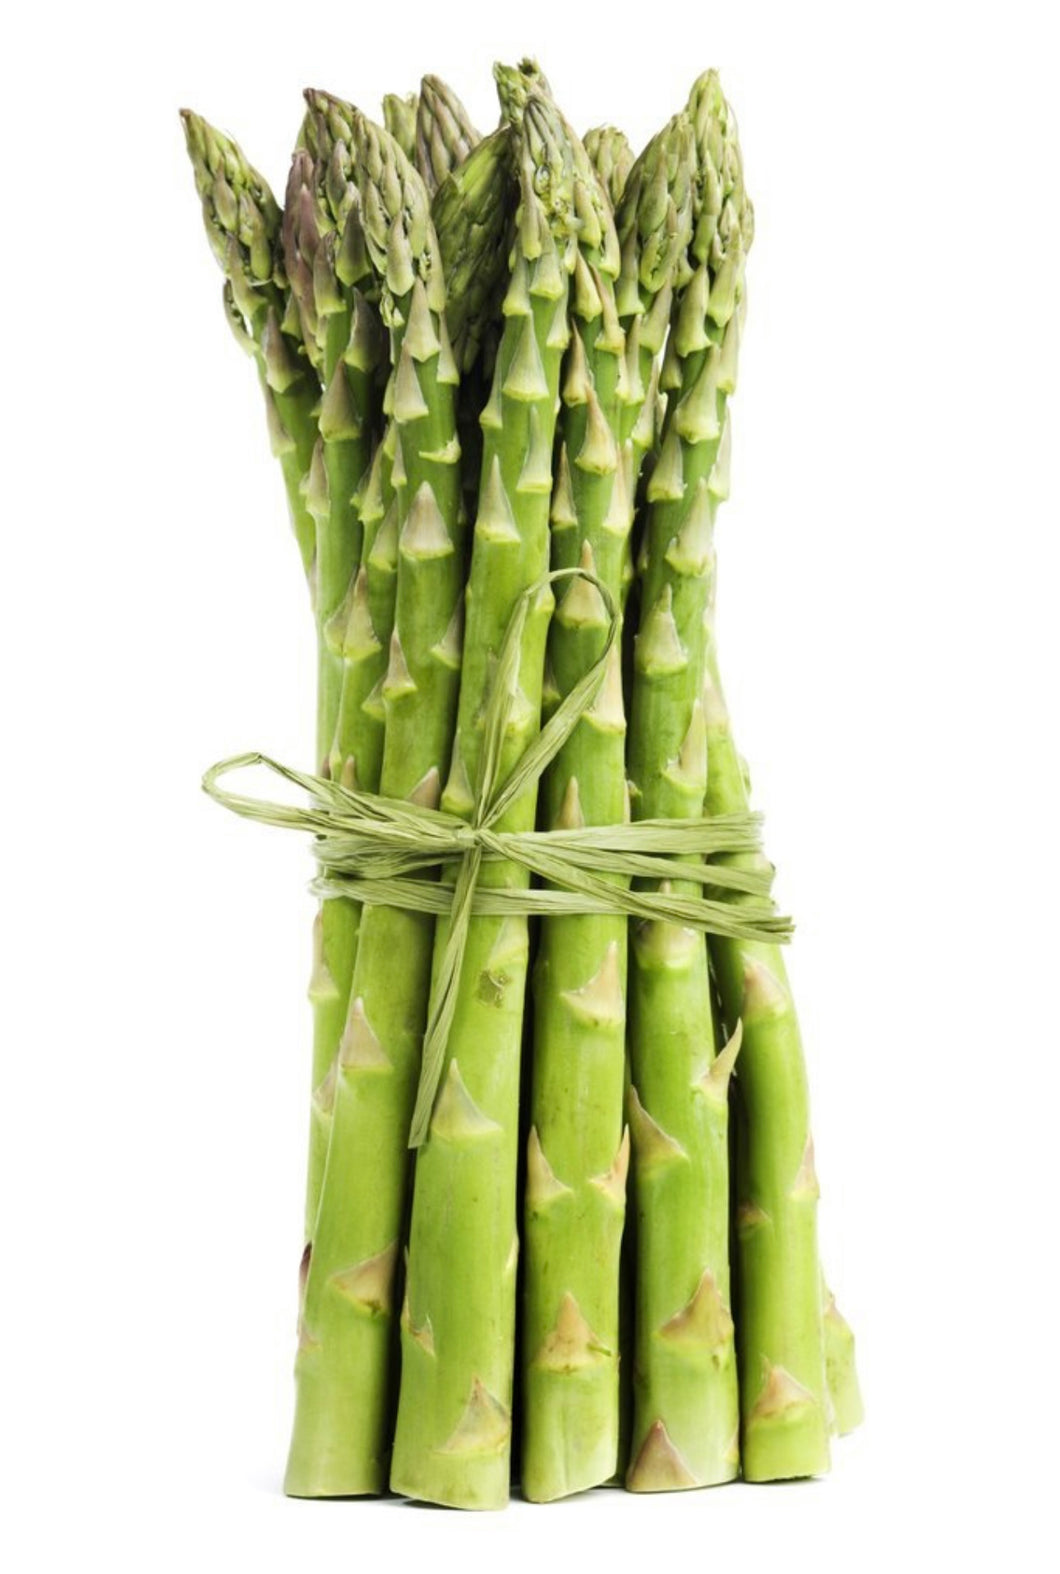 Asparagus (Bunch)